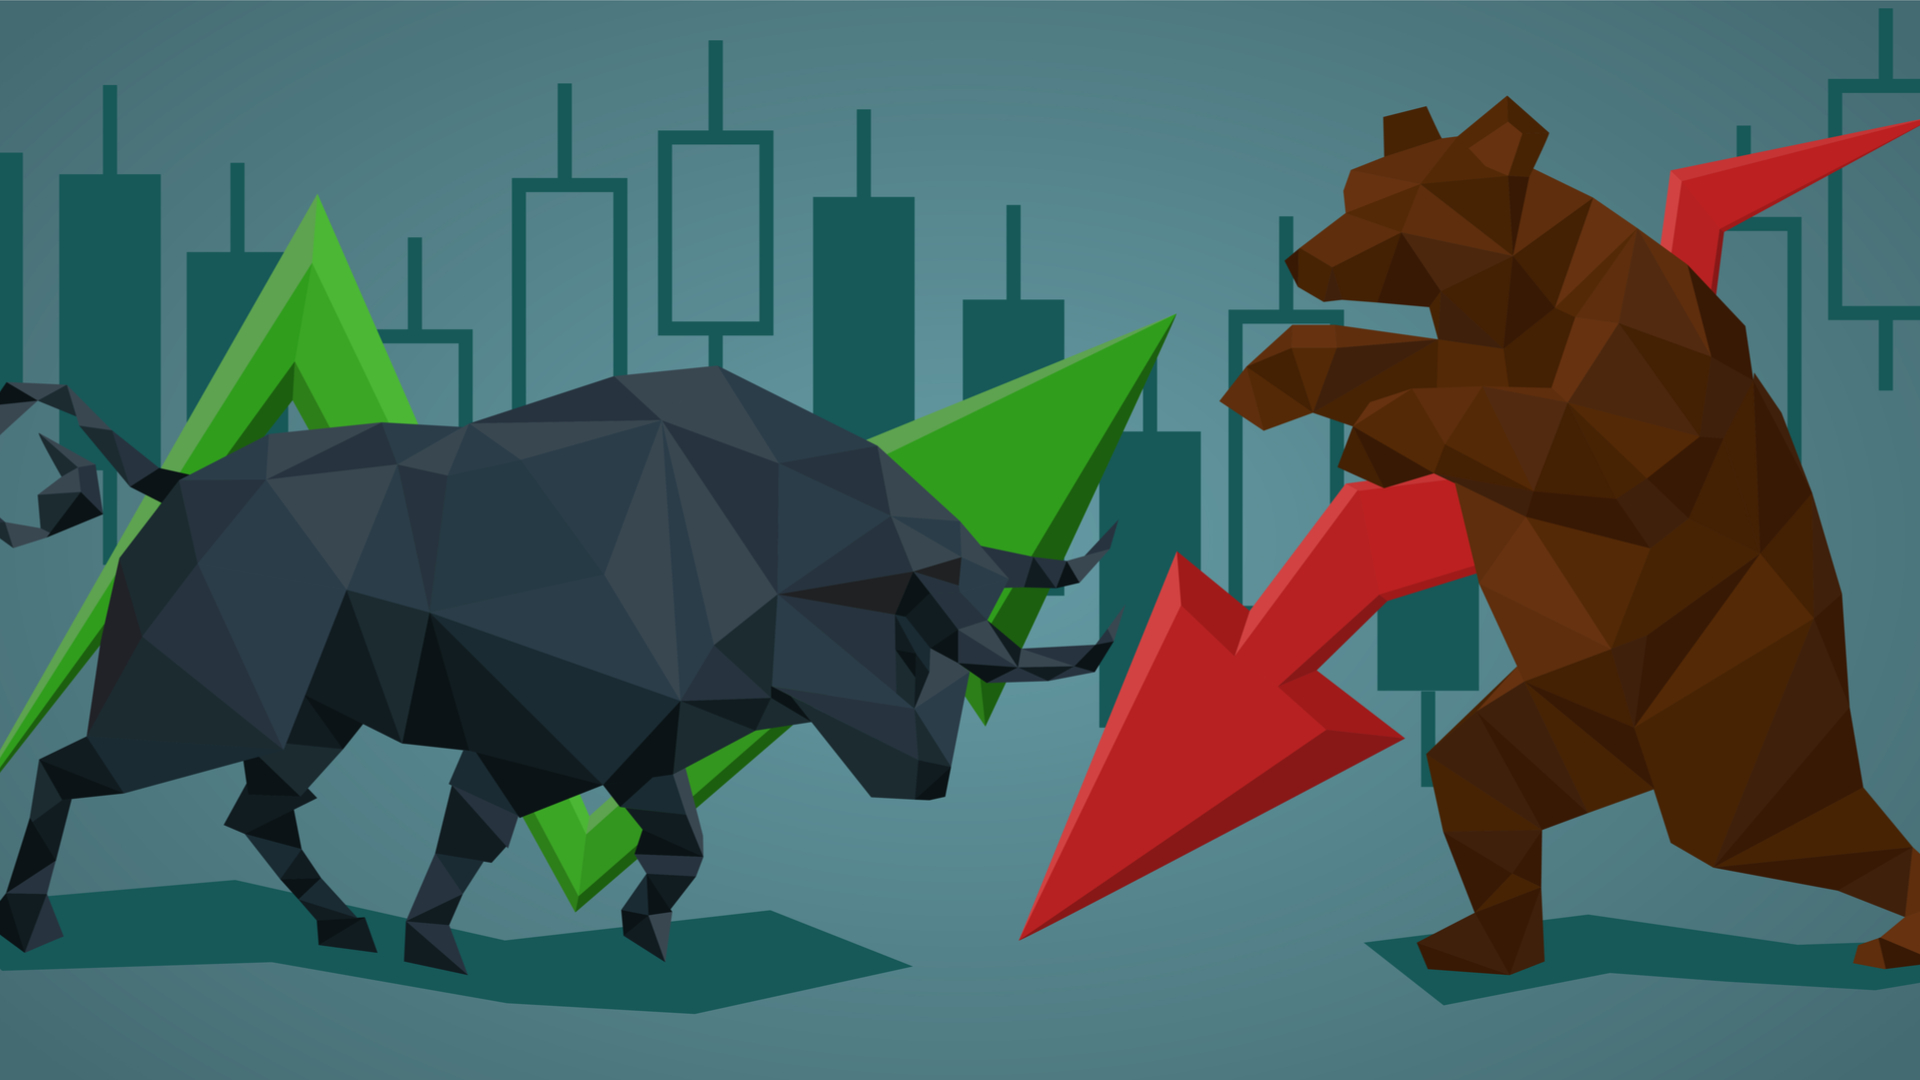 Touro, urso, tubarão: conheça os bichos do mercado financeiro